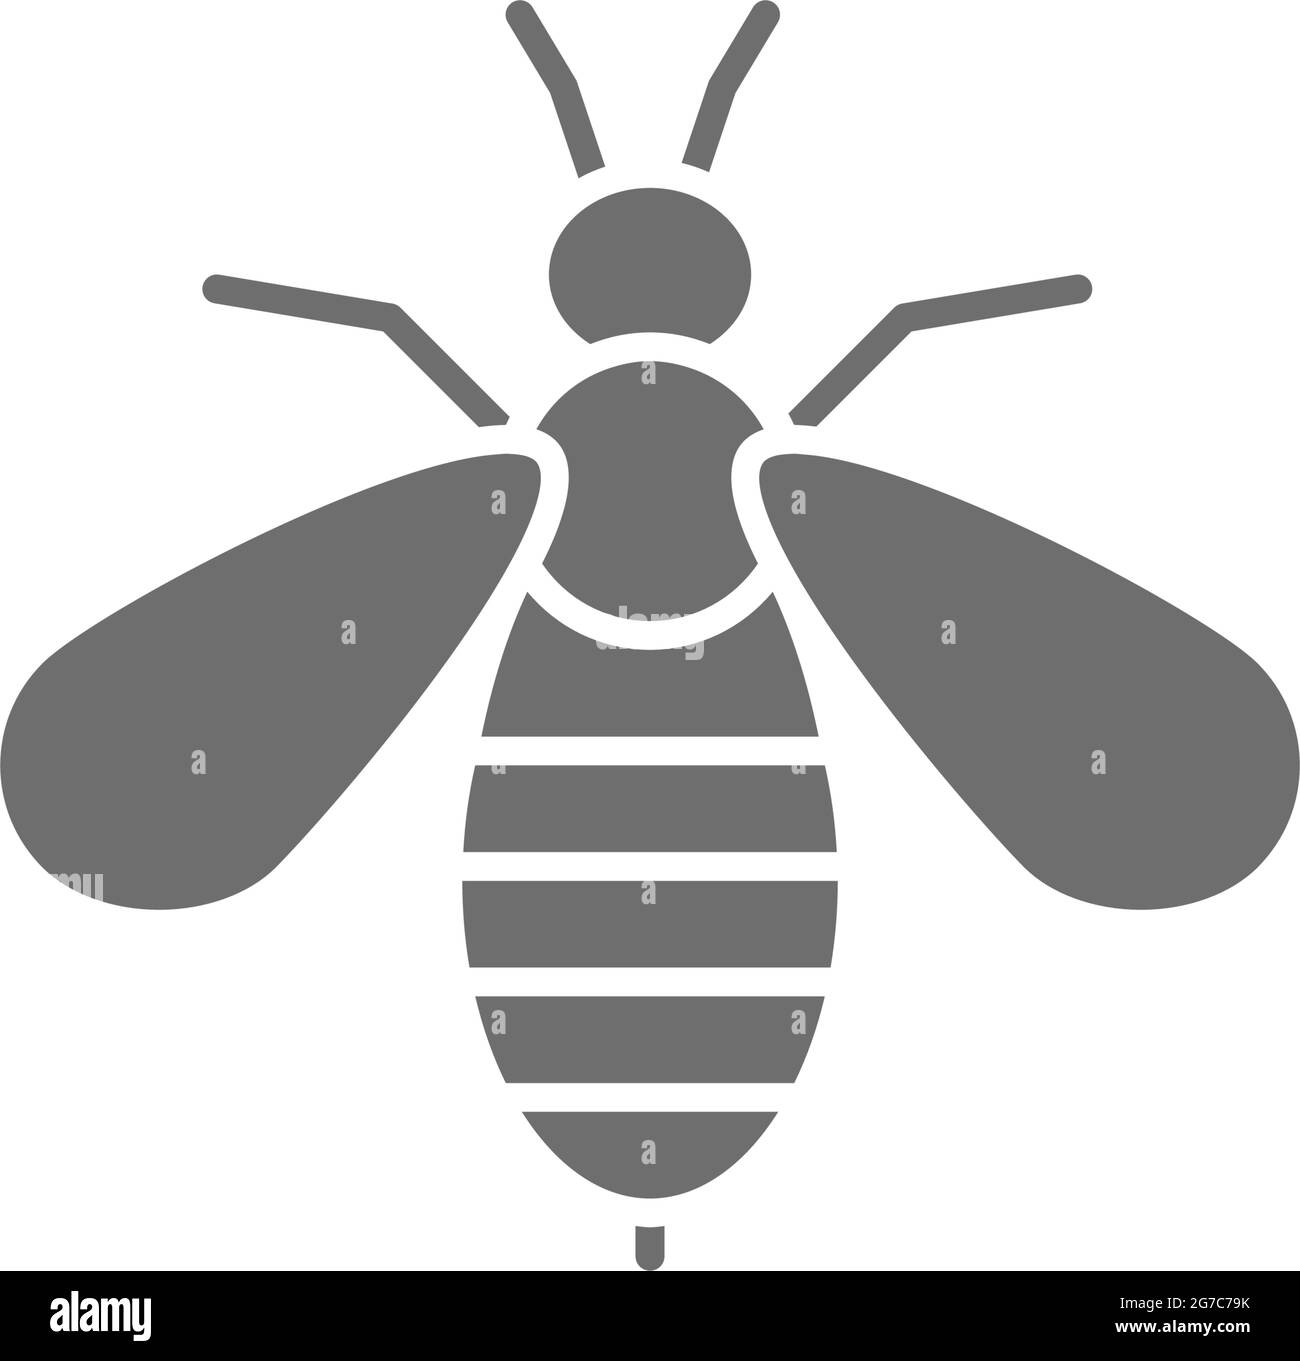 Icône grise de thérapie de venin d'abeille. Isolé sur fond blanc Illustration de Vecteur